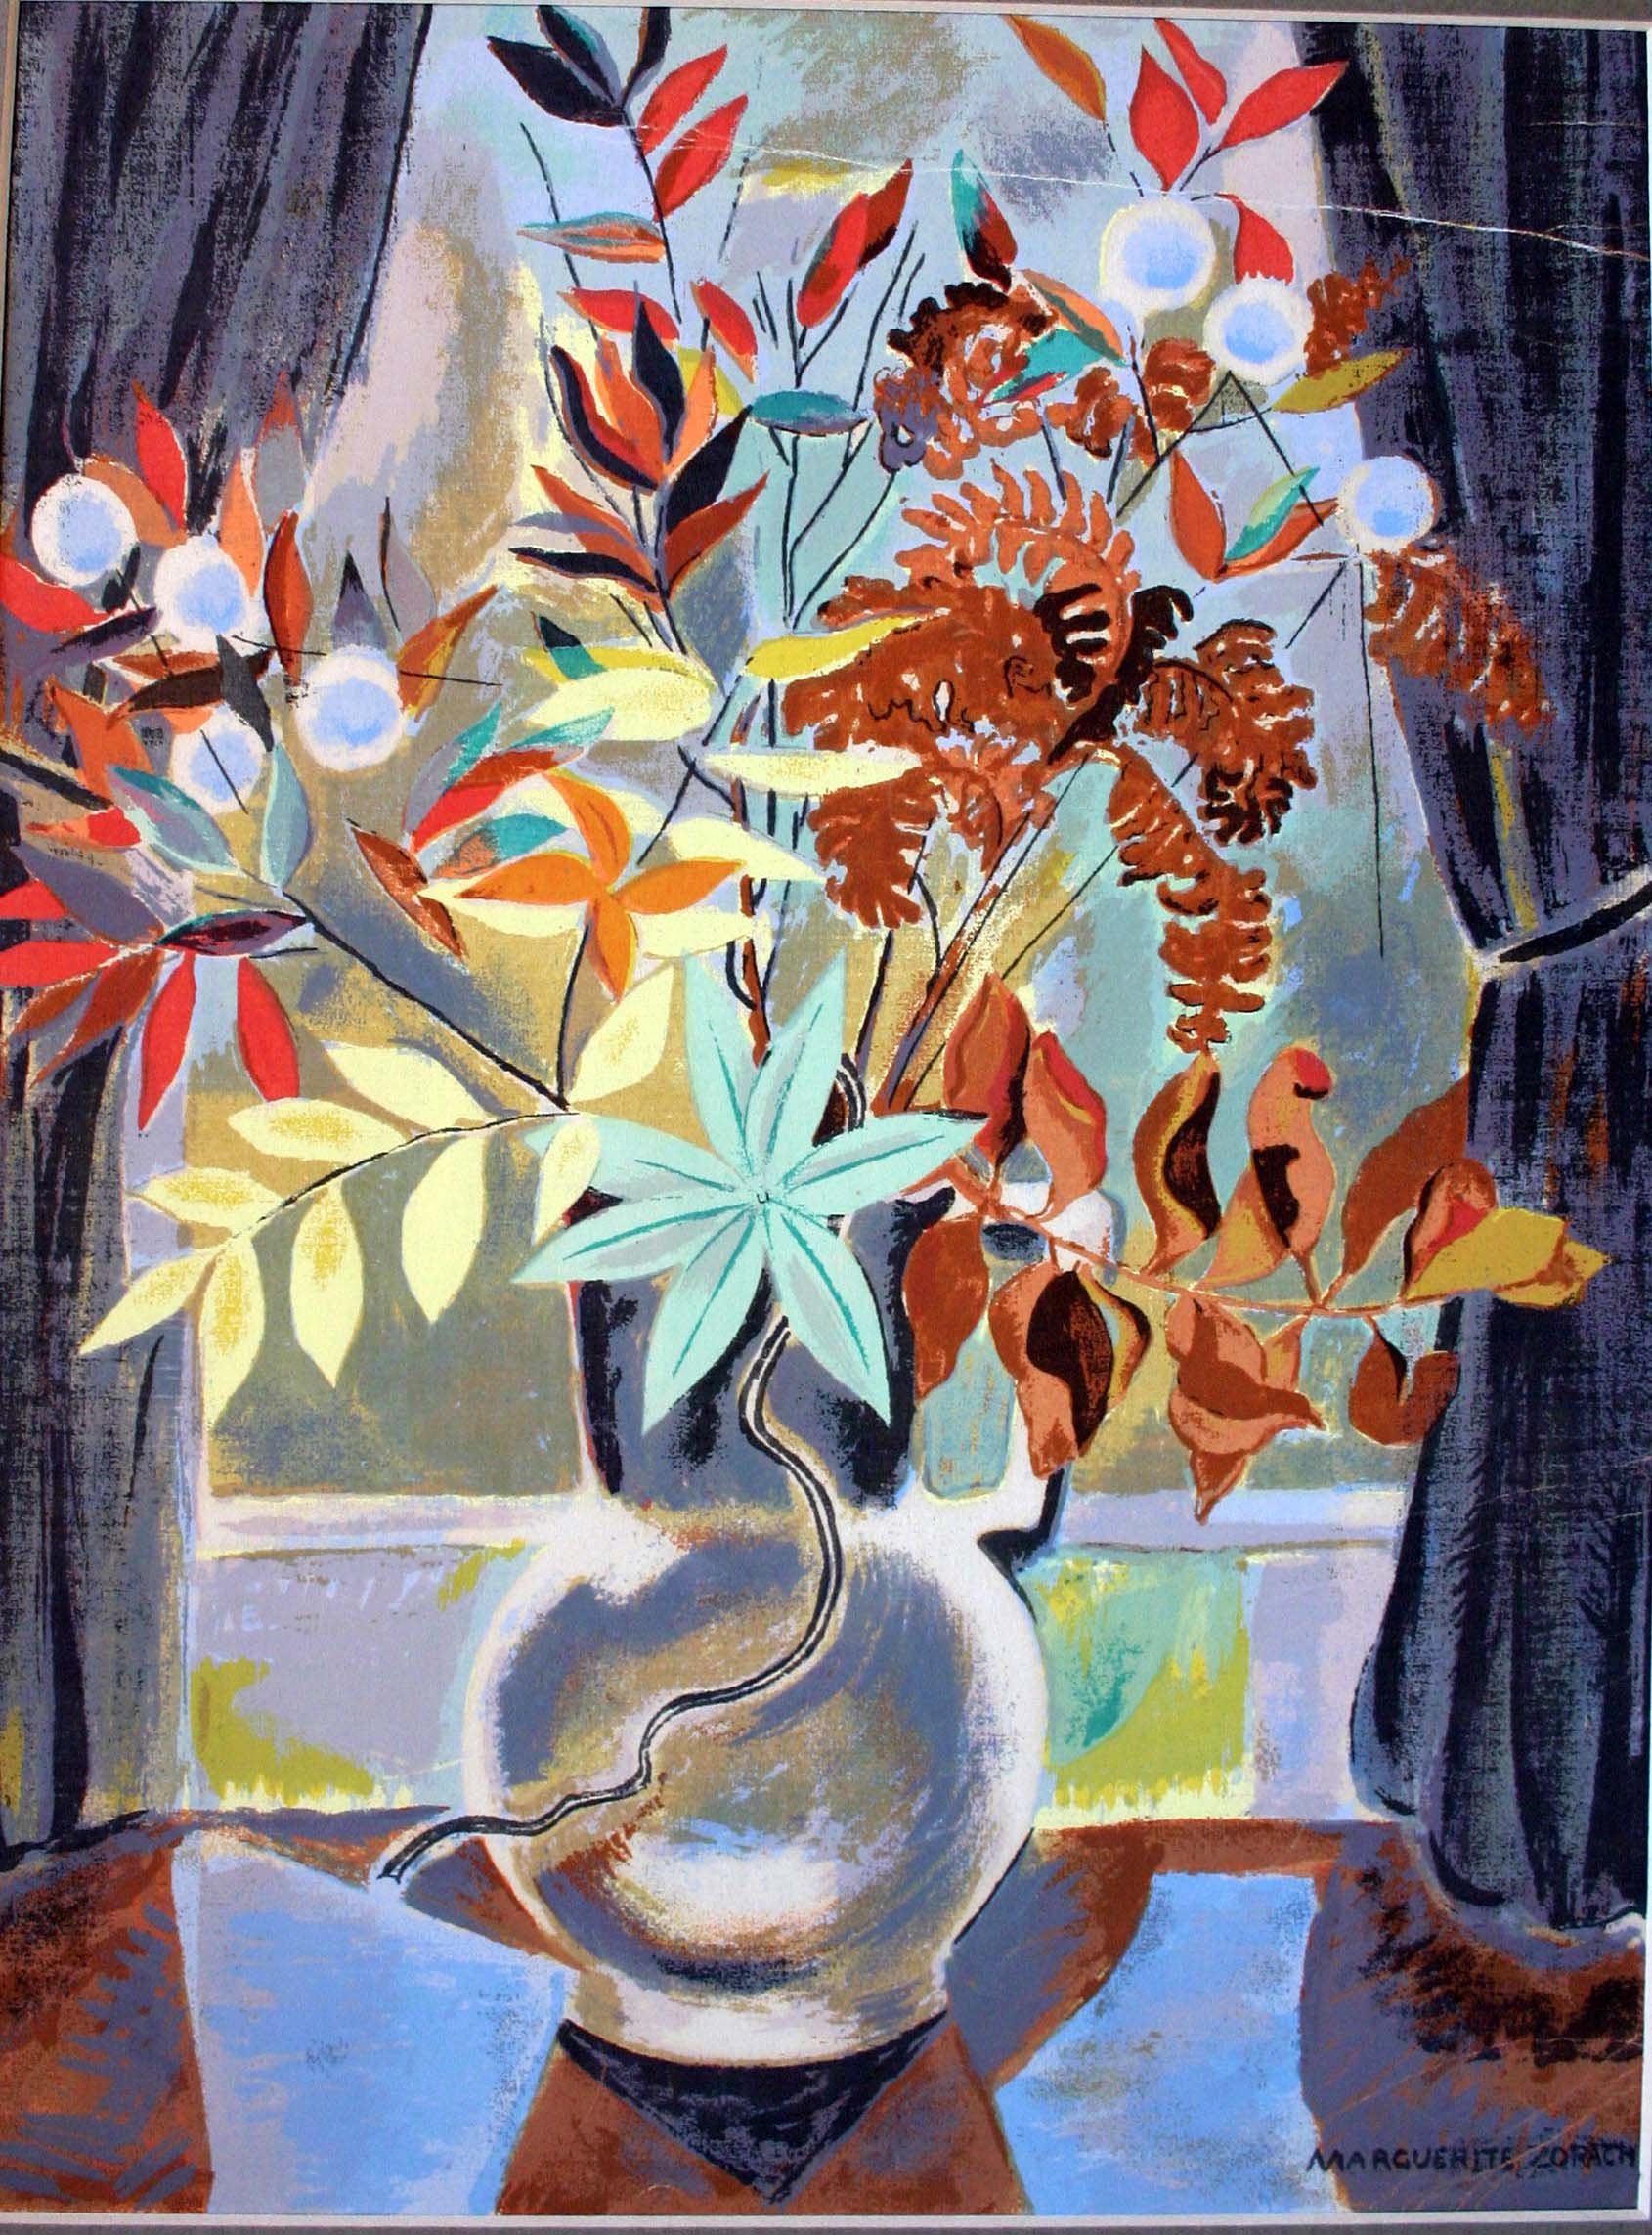 Flowers by Marguerite Zorach